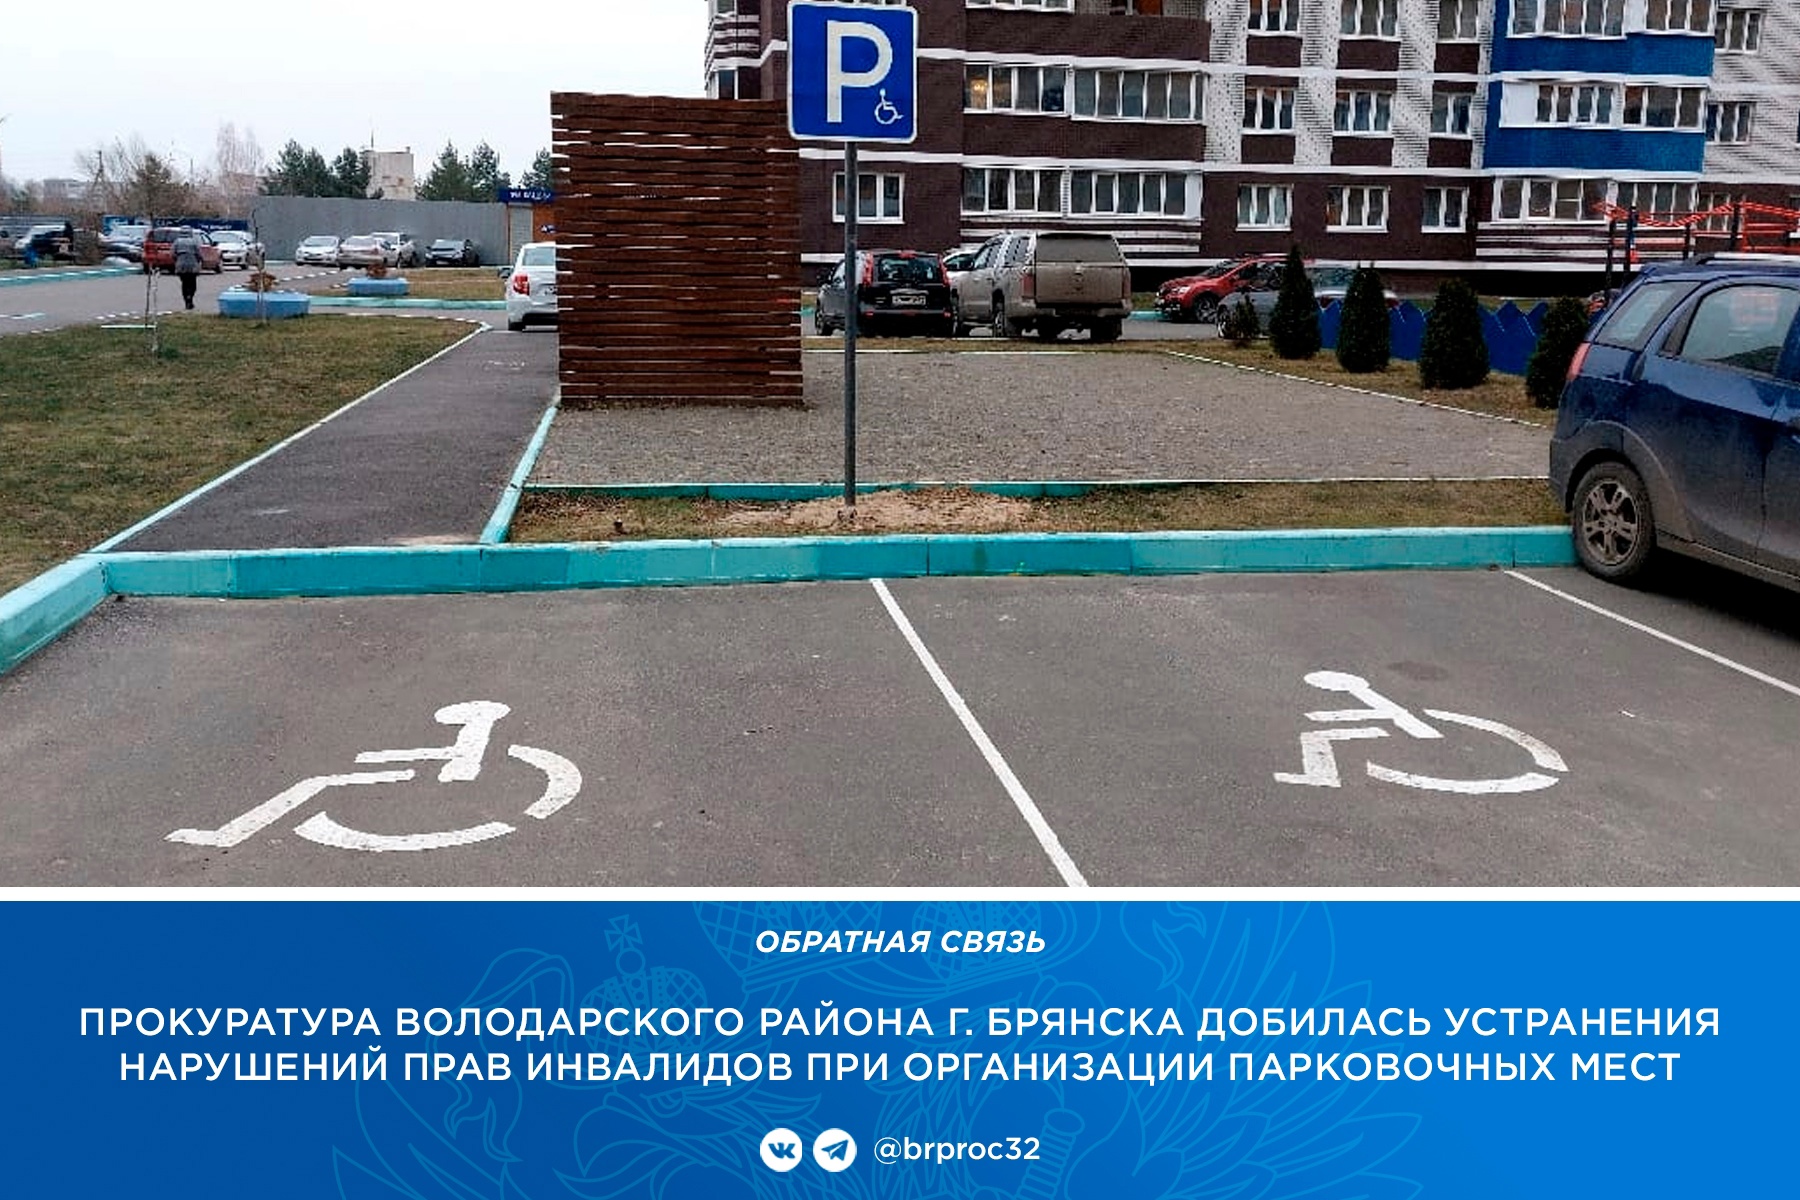 В Брянске управляющую компанию наказали за отсутствие парковки для инвалидов